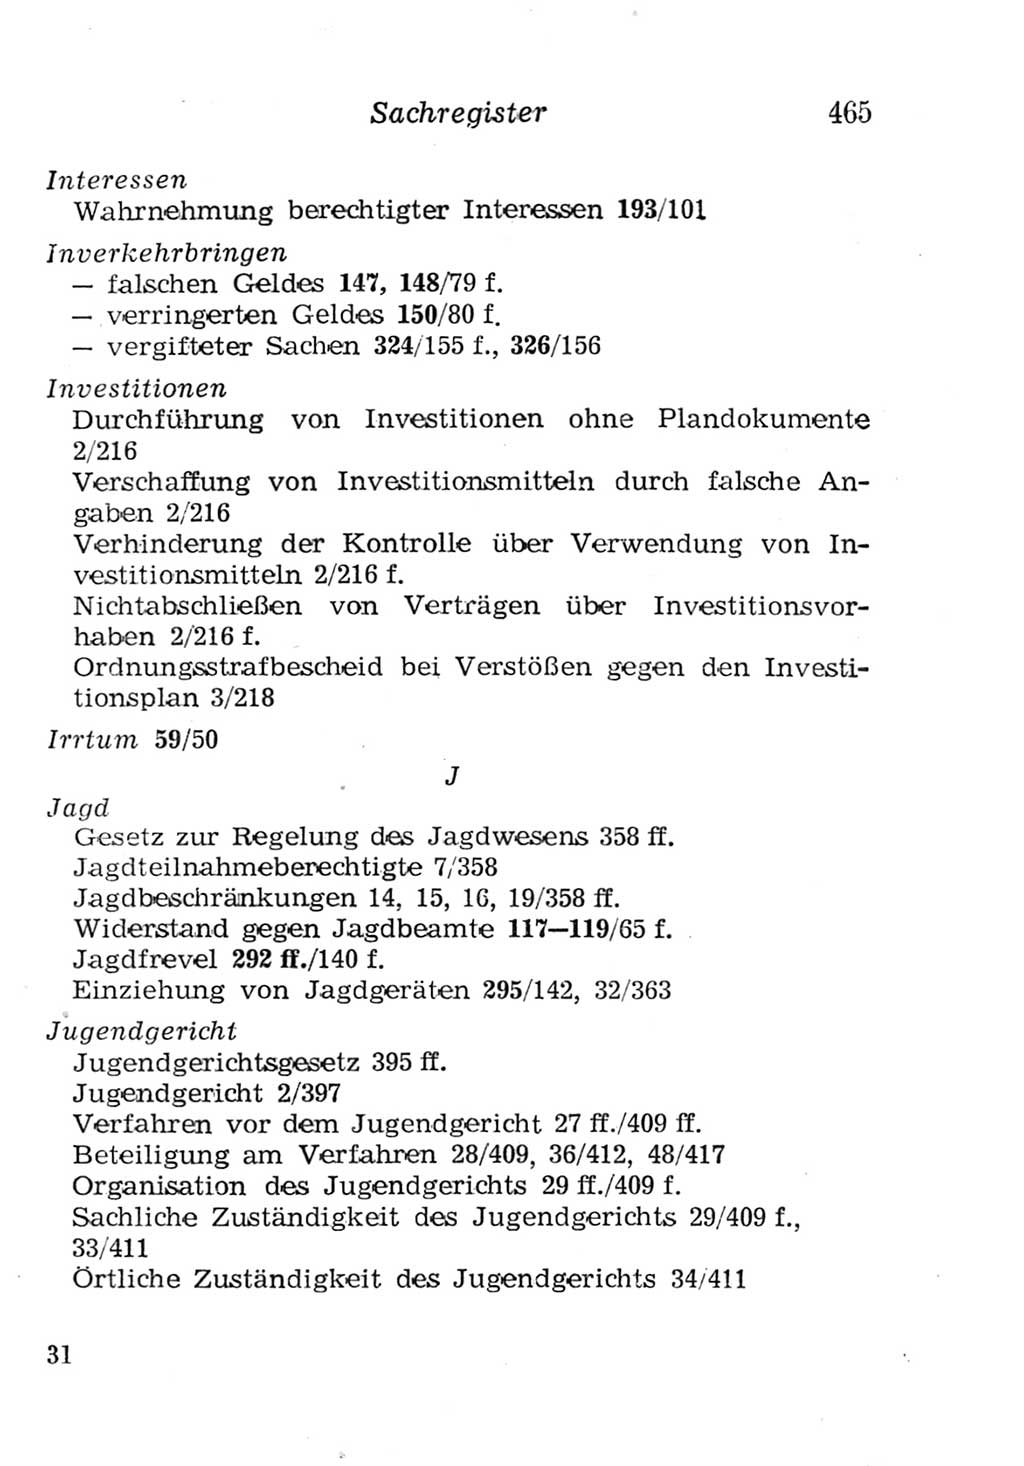 Strafgesetzbuch (StGB) und andere Strafgesetze [Deutsche Demokratische Republik (DDR)] 1957, Seite 465 (StGB Strafges. DDR 1957, S. 465)